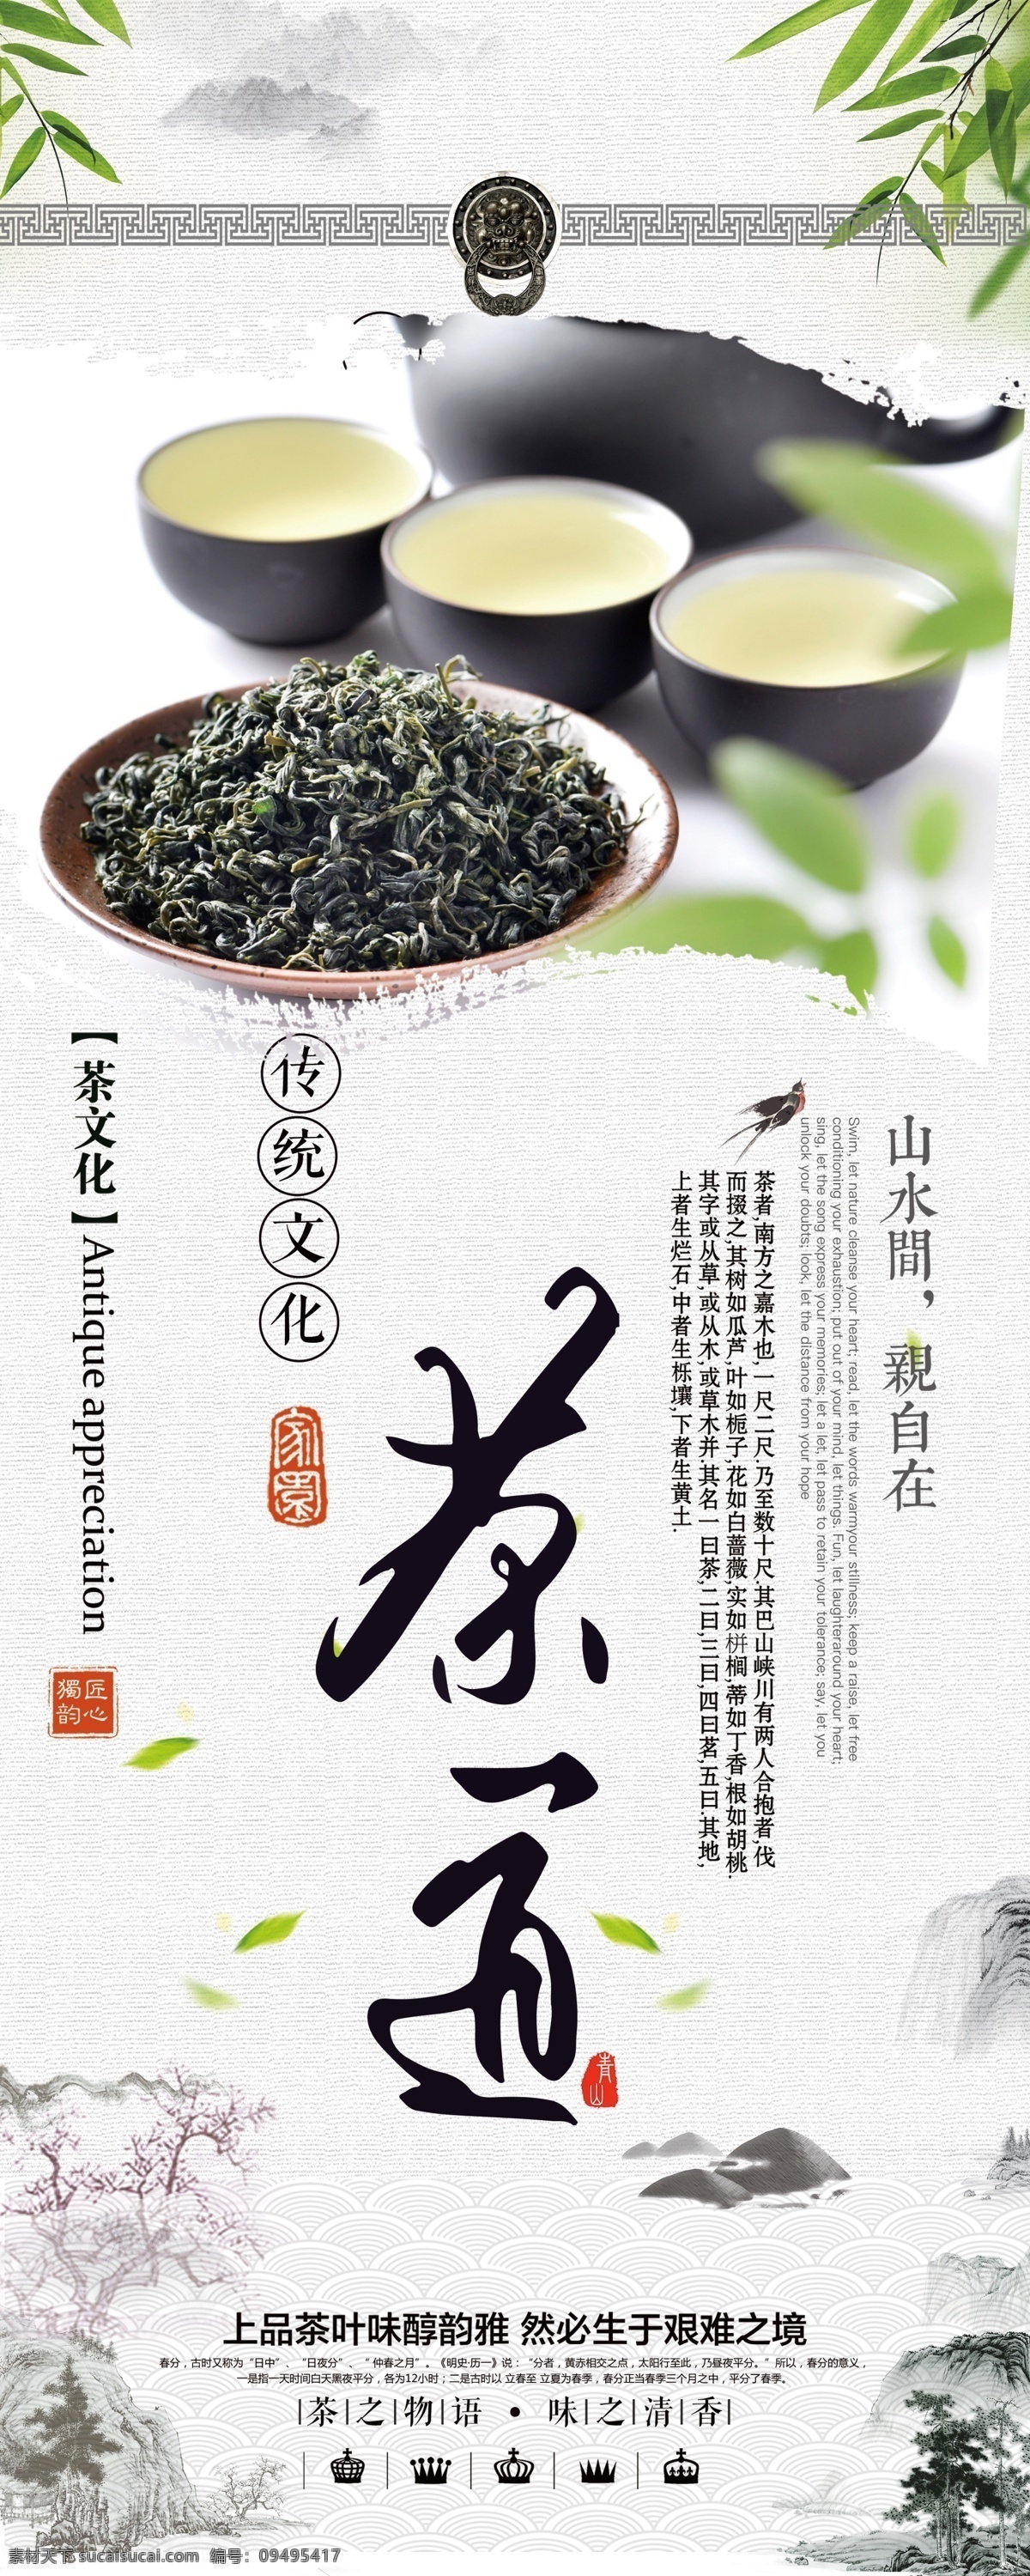 茶道文化展架 茶道文化 茶叶展架 绿茶文化 中华文化 中国茶文化 茶 分层